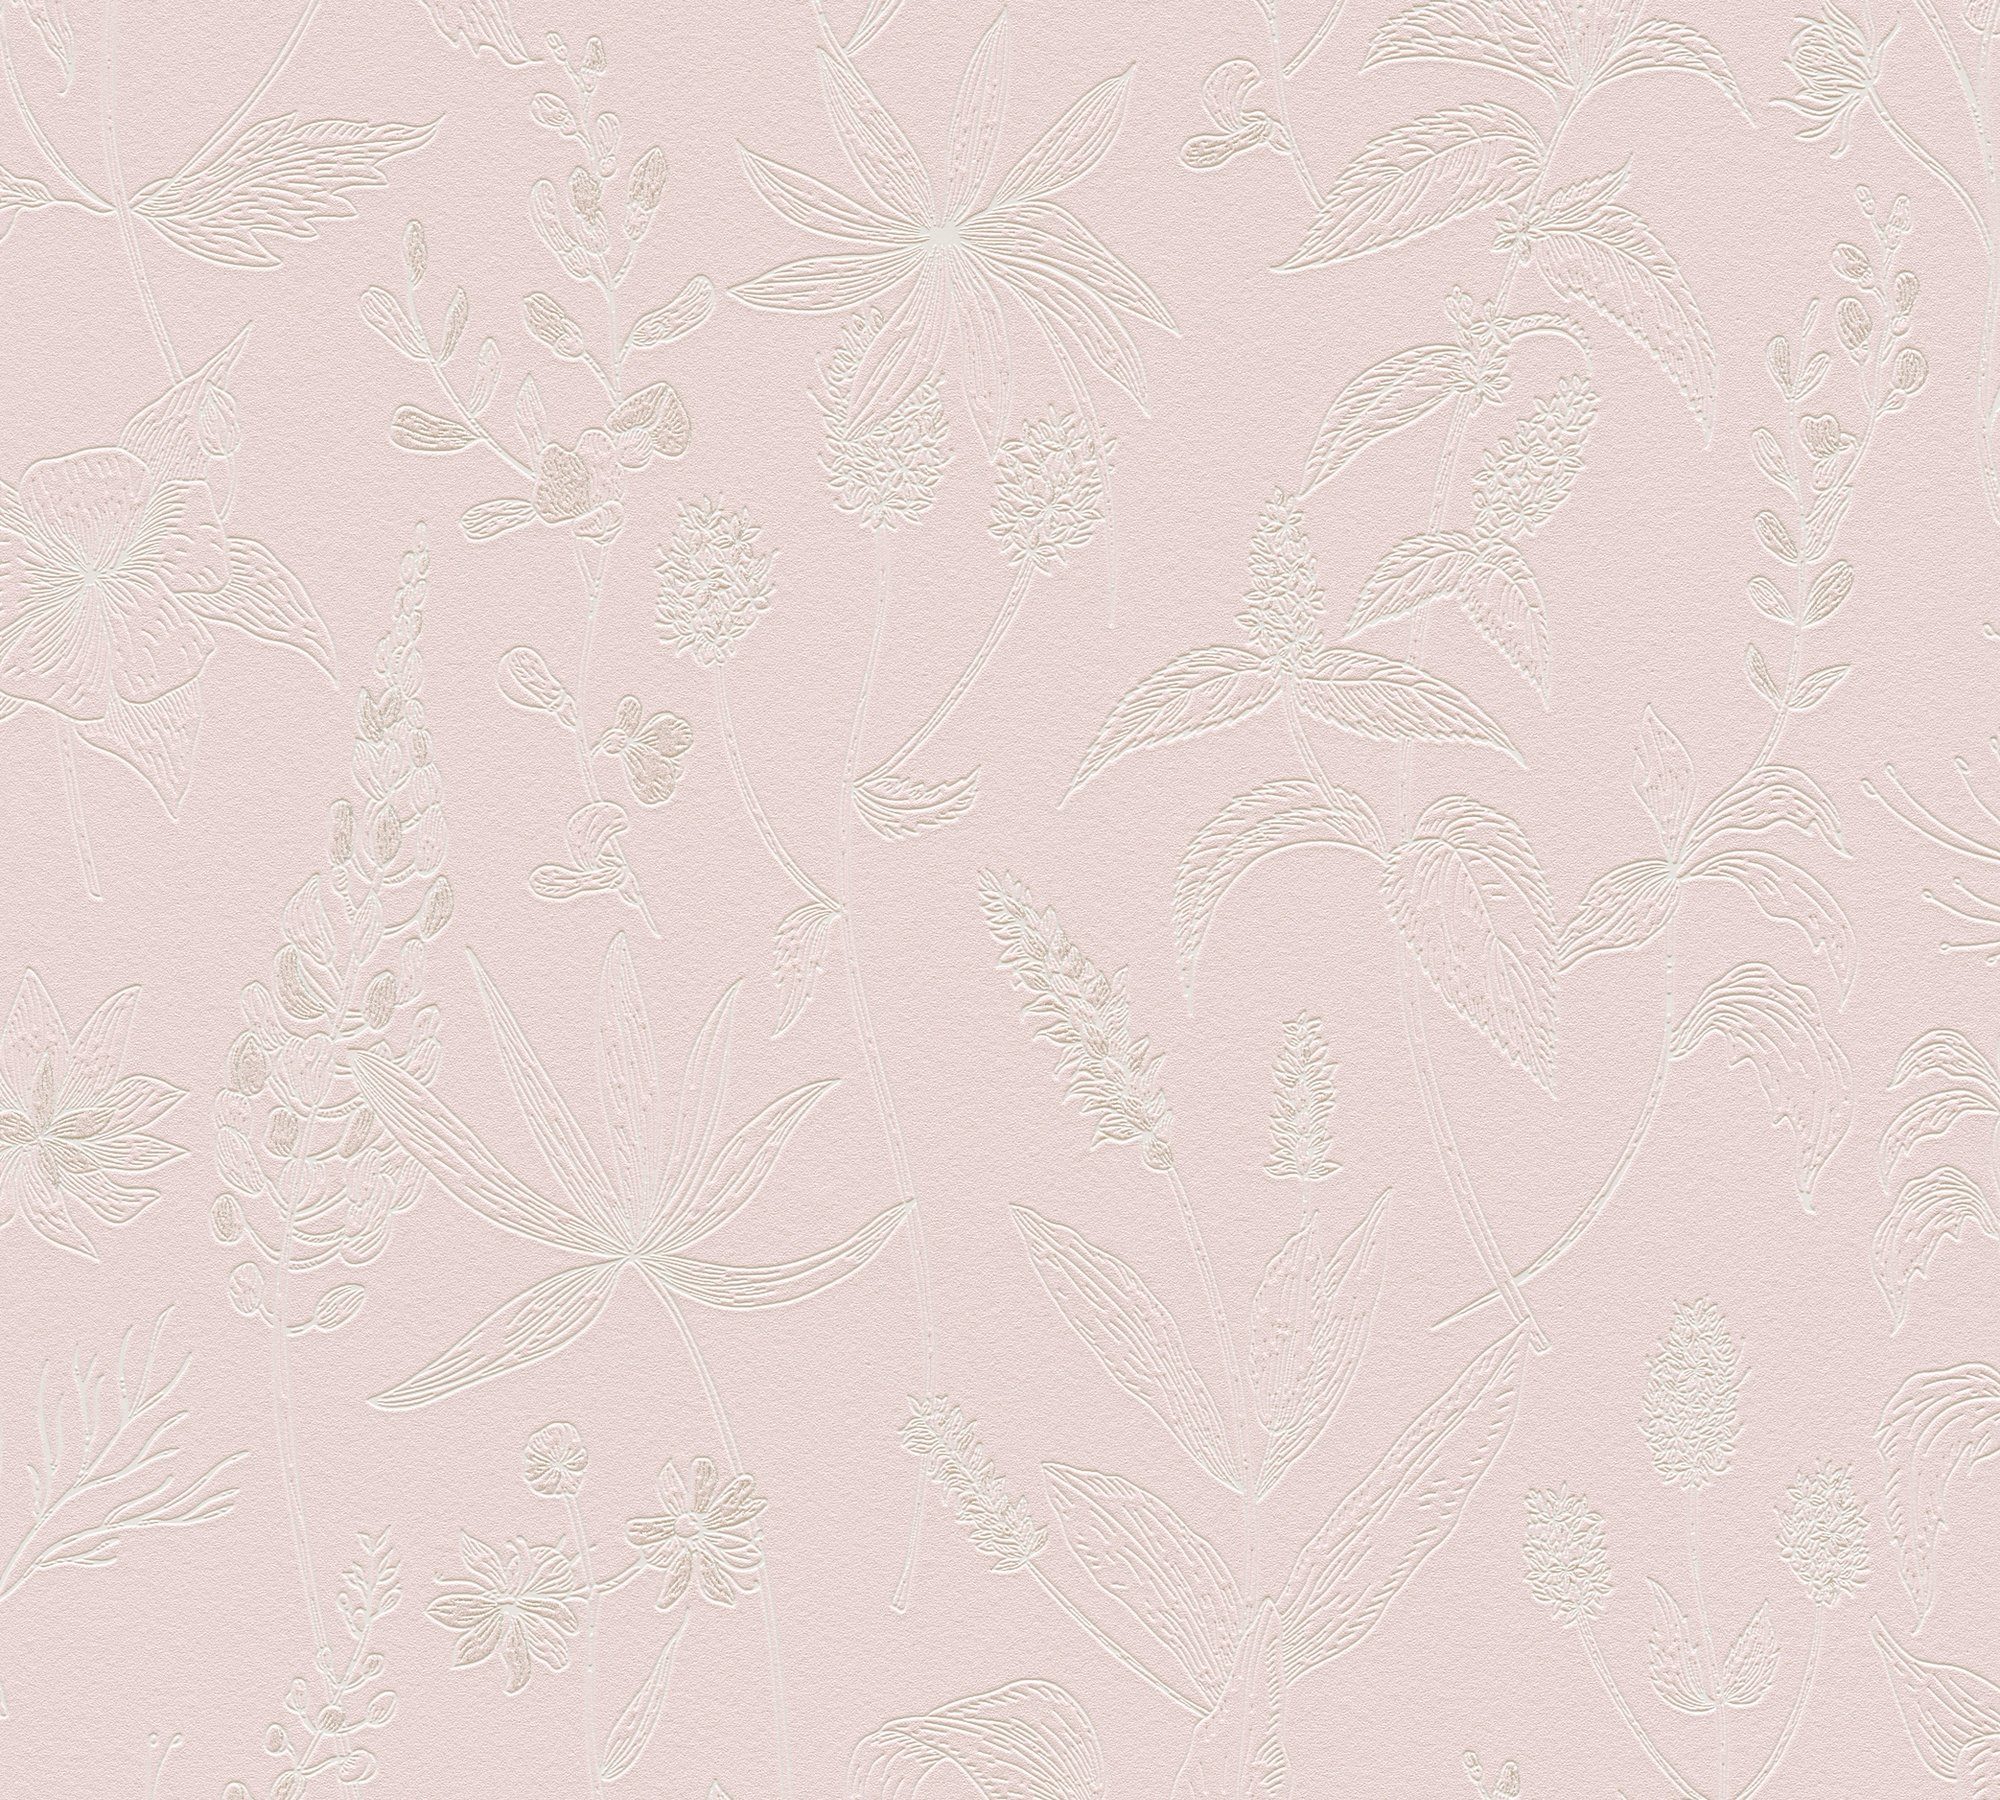 A.S. Tapete rosa Joop floral, Vliestapete Jette Création Blumentapete strukturiert, floral natürlich, Streifen